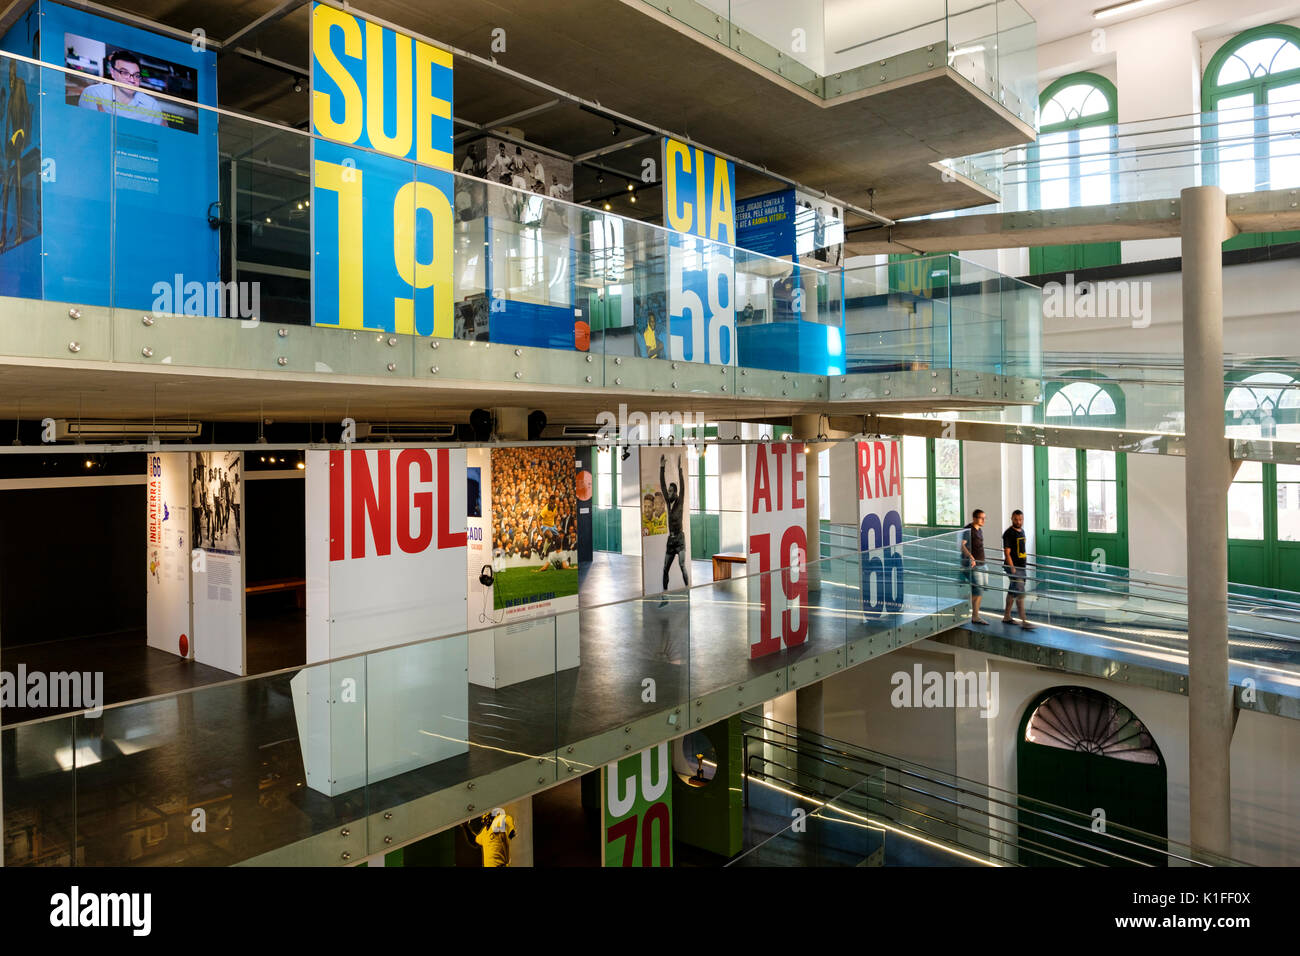 Vue intérieure de la Musée Pele Pelé), dédié à la légende du football brésilien, Edson Arantes do Nascimento, Santos, Etat de Sao Paulo, Brésil. Banque D'Images